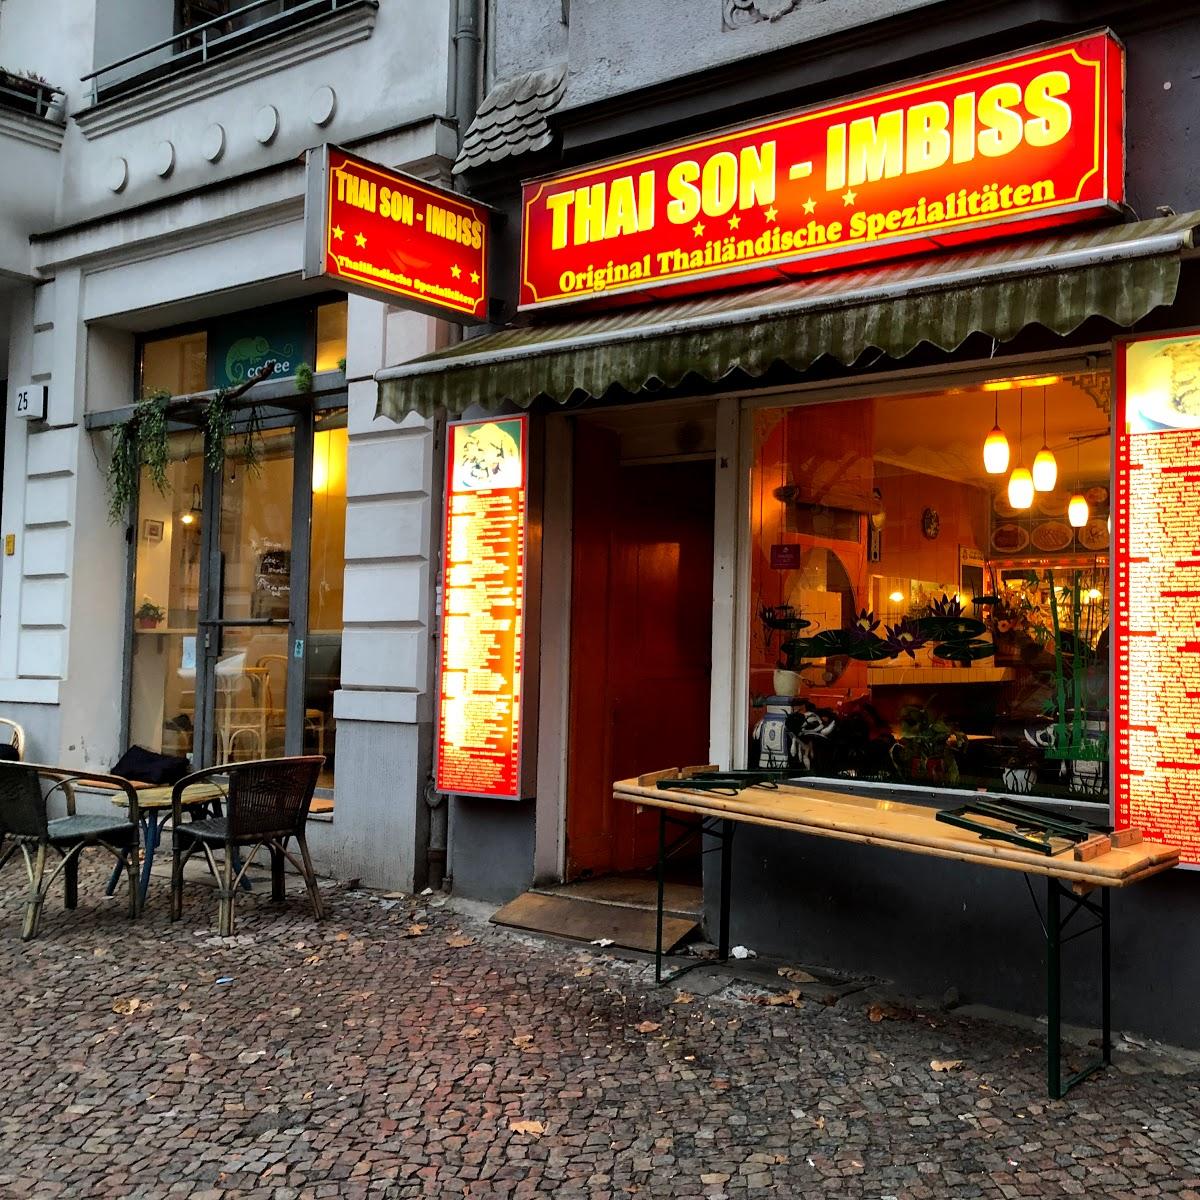 Restaurant "Thai Son Imbiss - Berlin - Bringdienst - Asiatisch" in Berlin